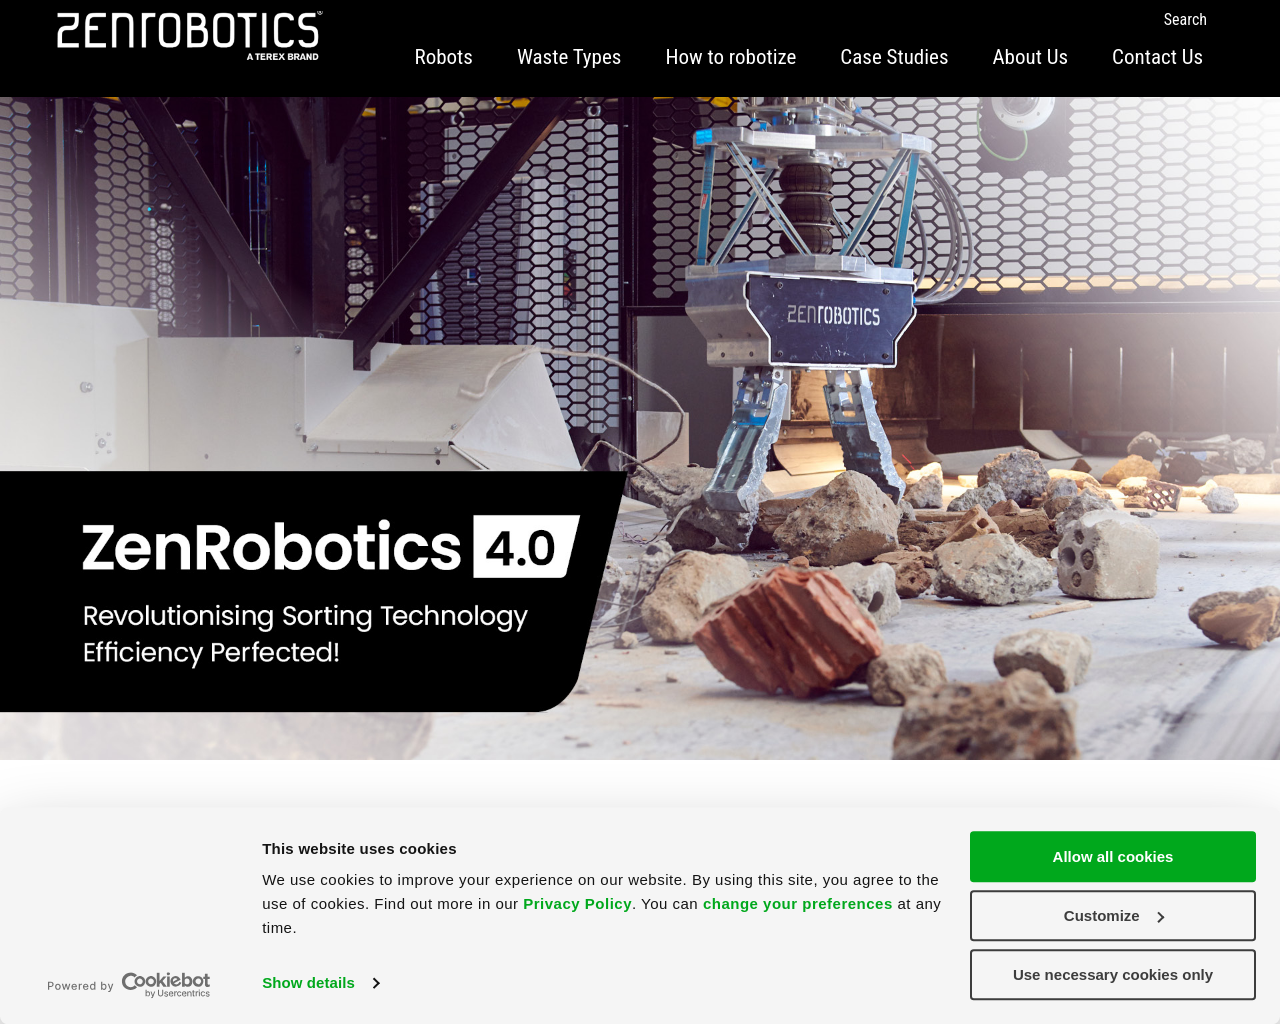 zenrobotics.com